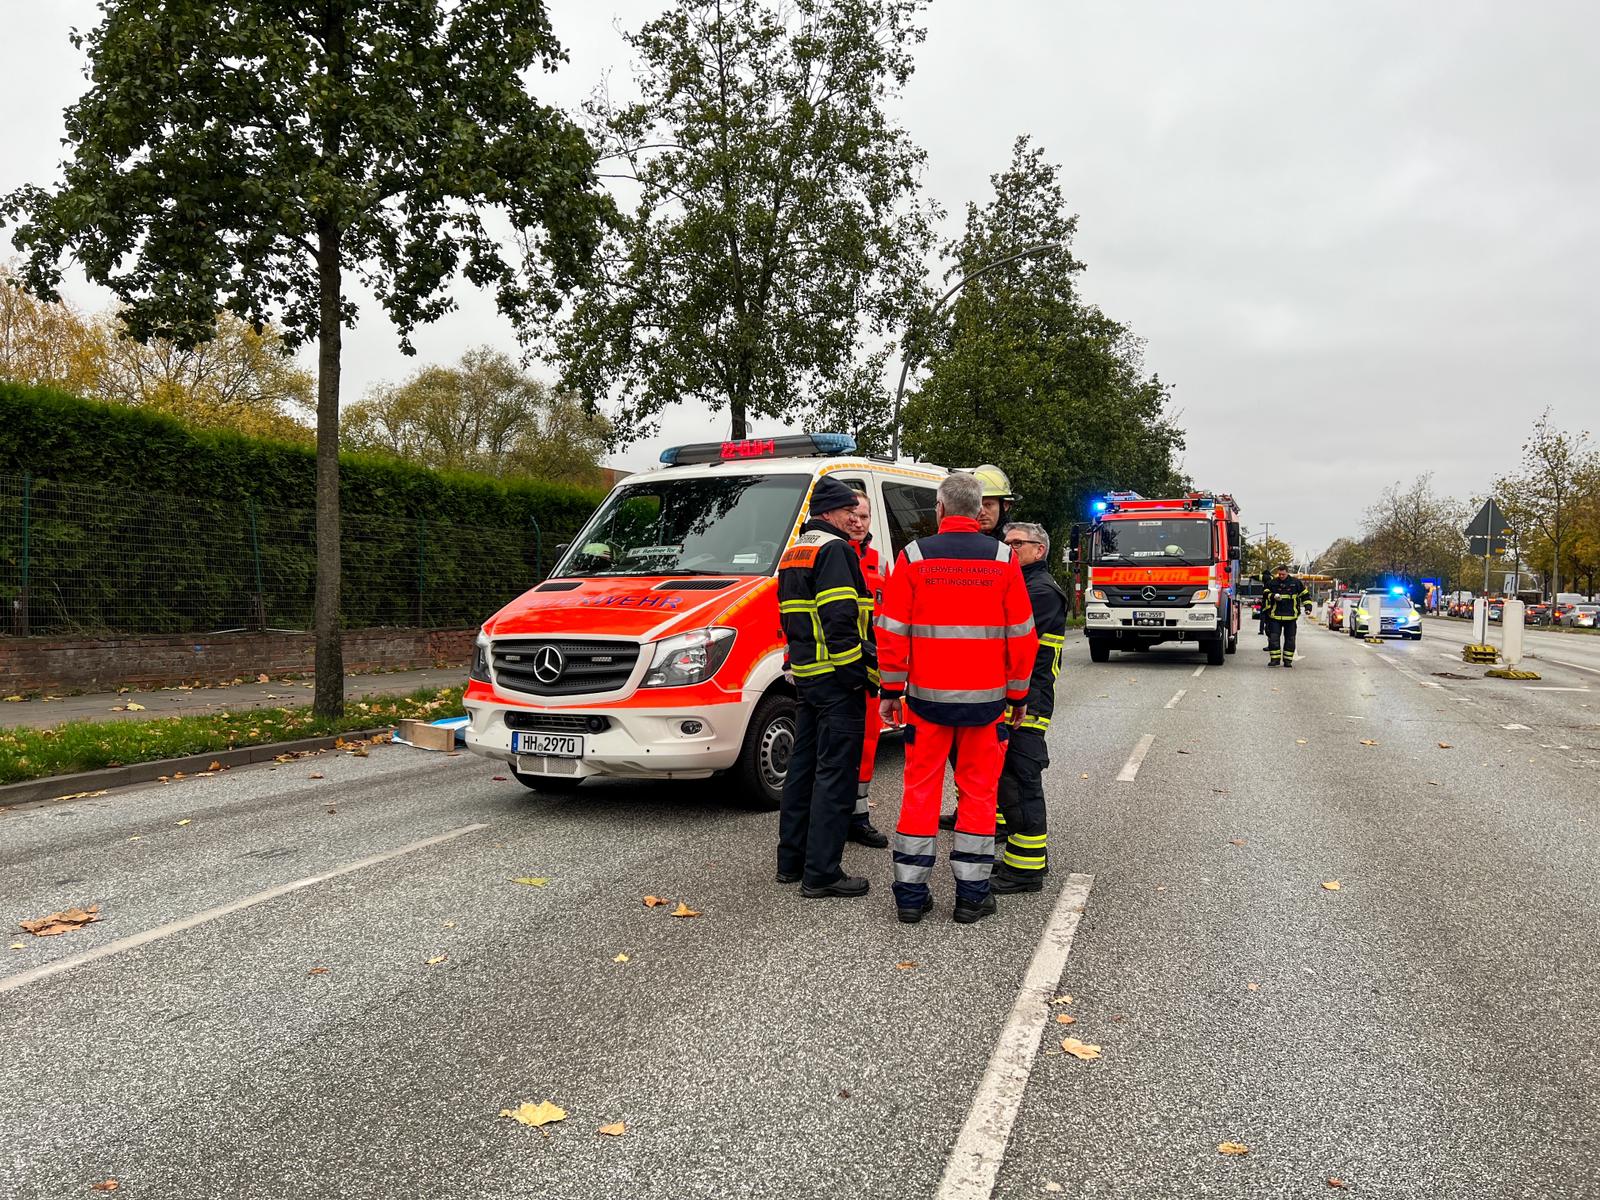 Lkw erfasst Fußgänger – tödlicher Unfall in Hamburg